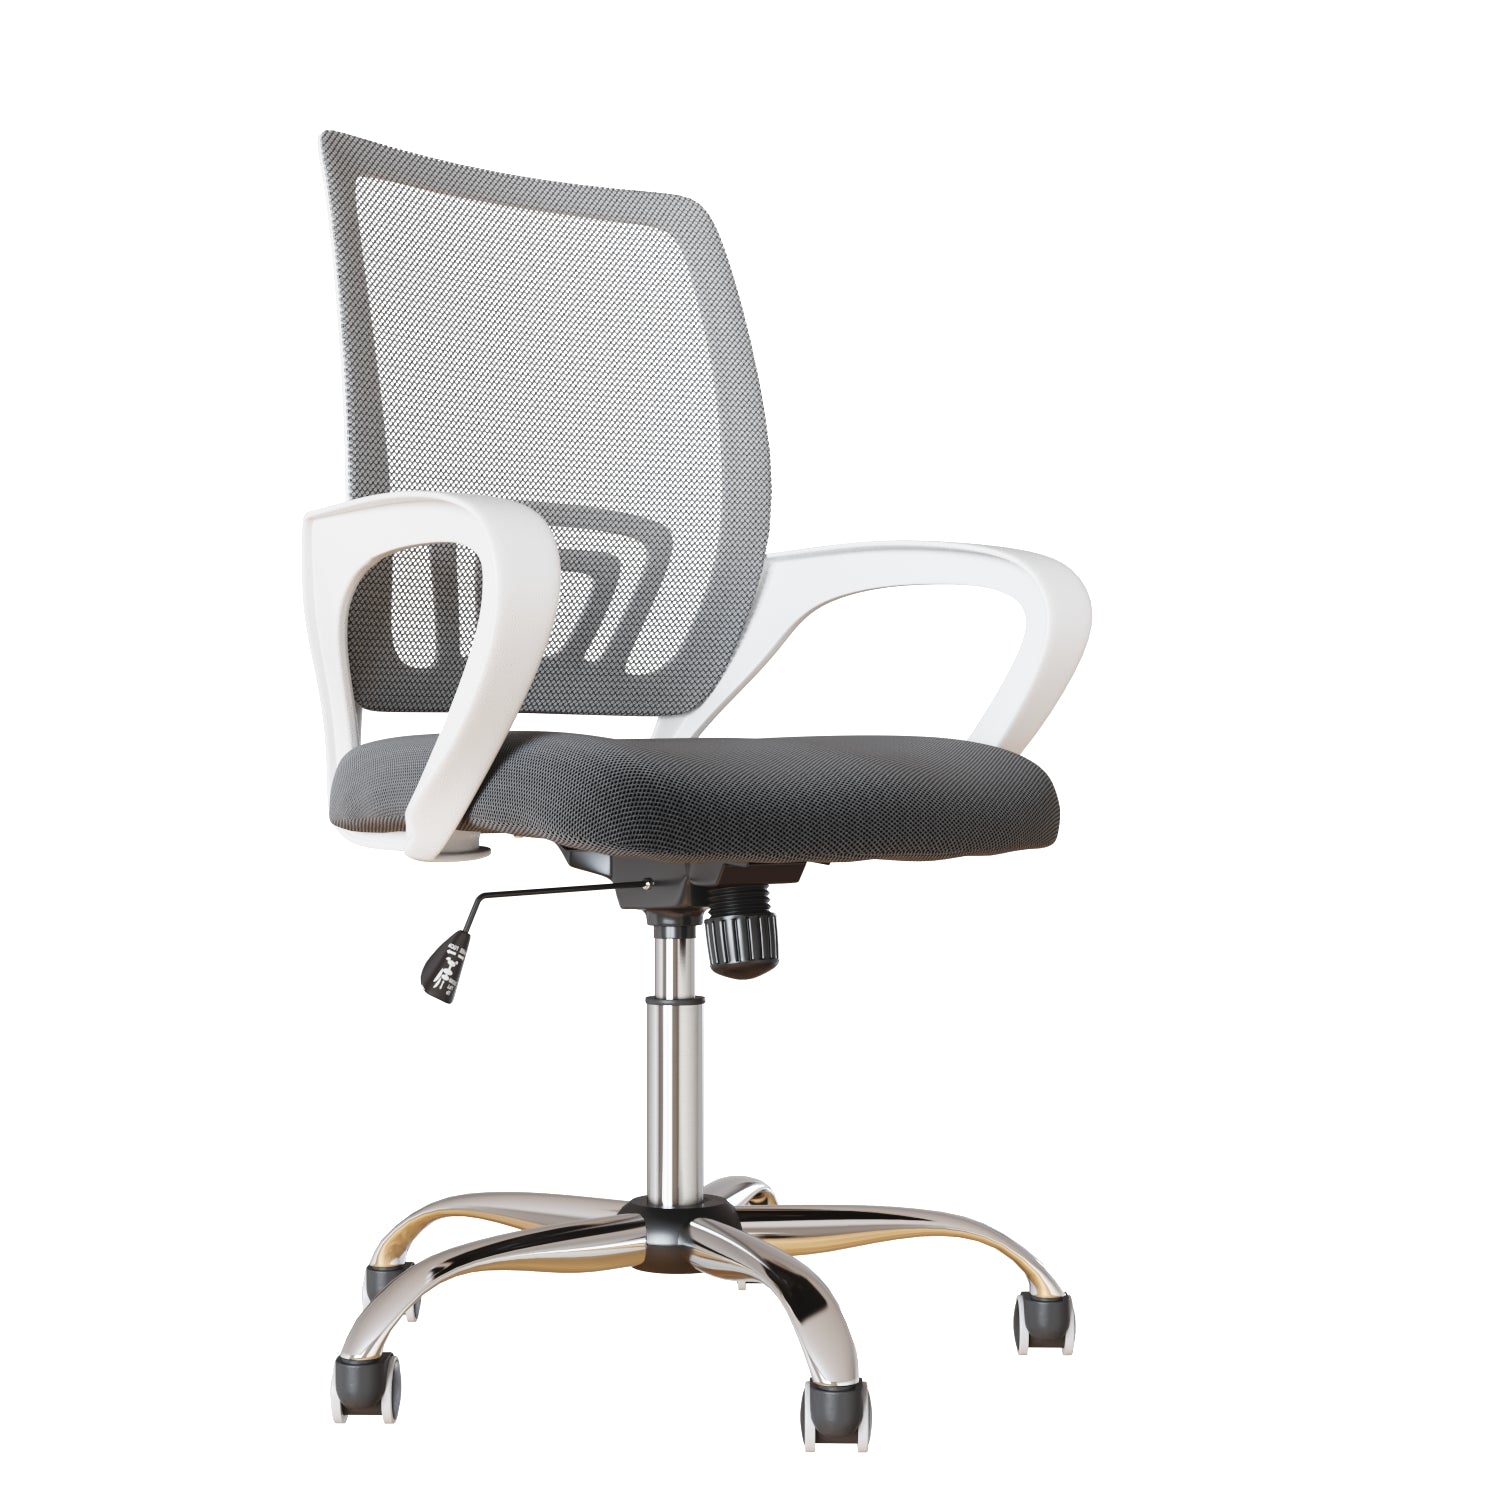 Zazan-Office-Chair-3D-Model-by-Krievostore